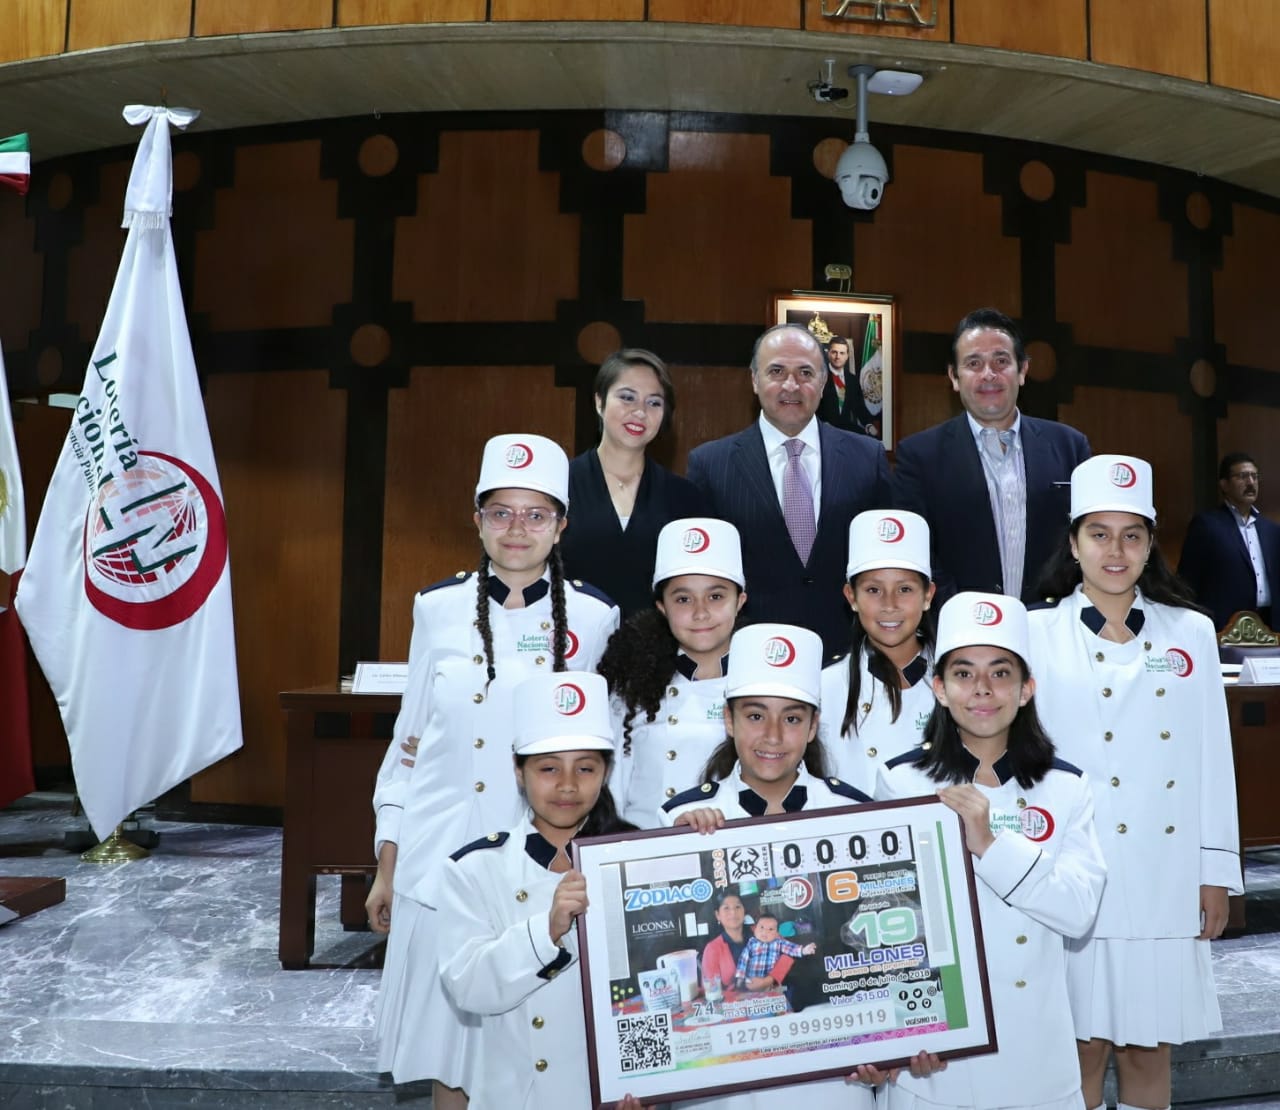 Fotografía de autoridades que encabezaron el sorteo acompañados de niñas y niños gritones de Lotería Nacional.